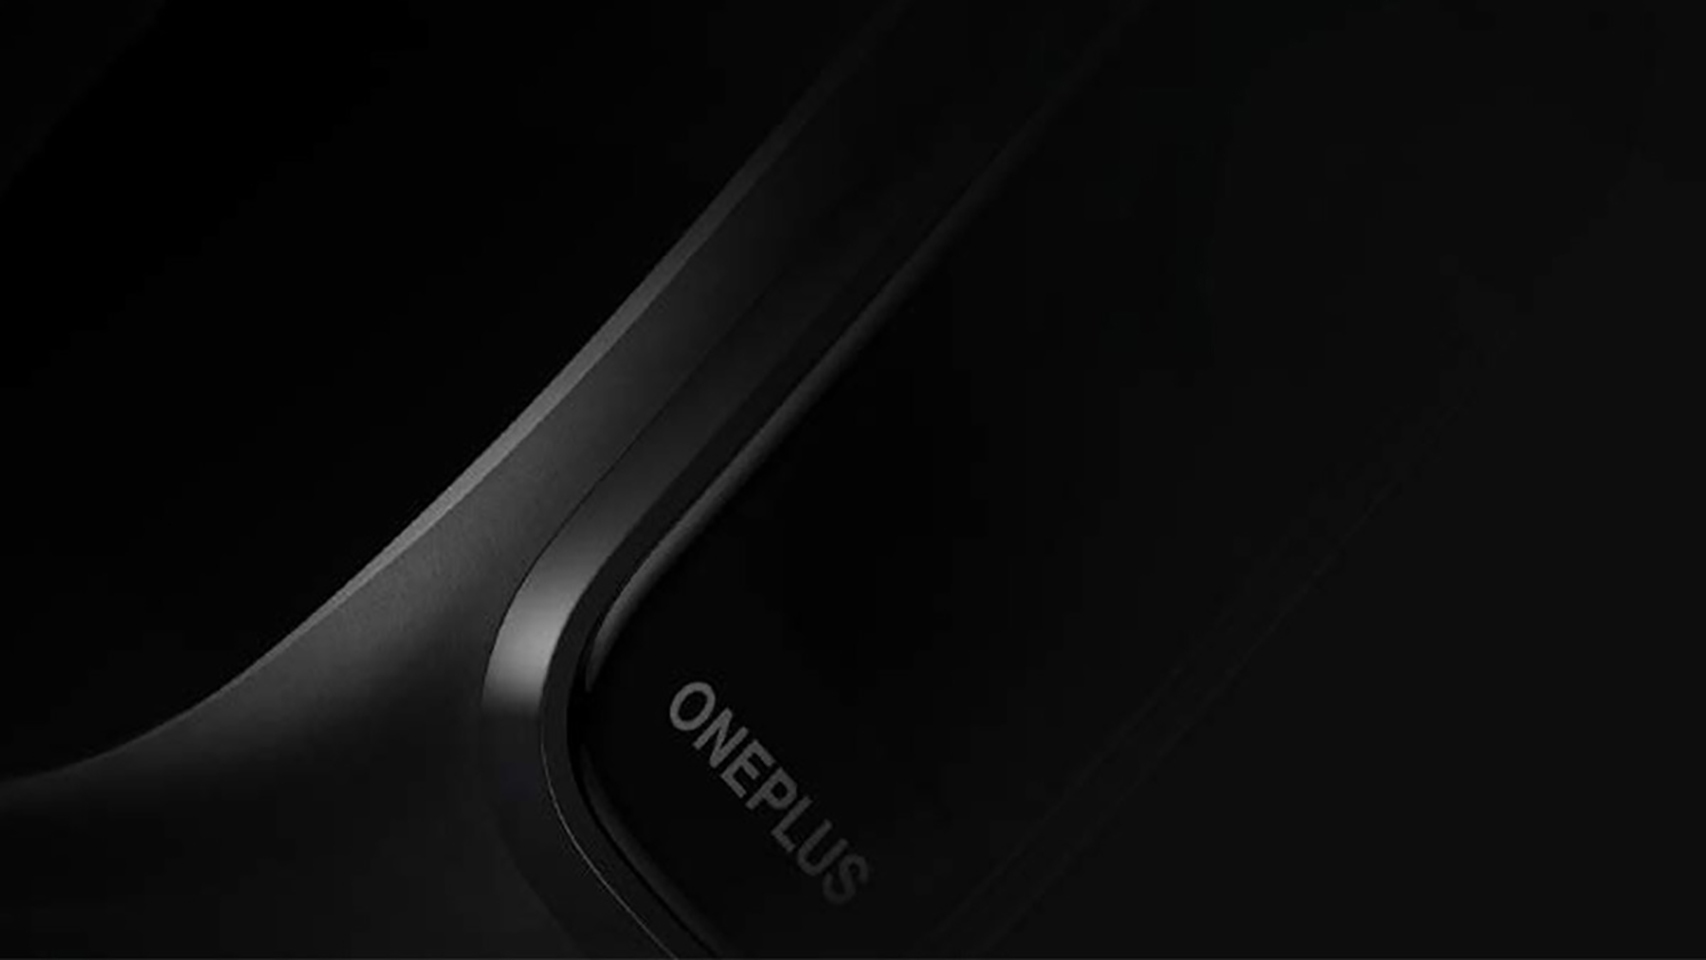 Smartband de OnePlus.